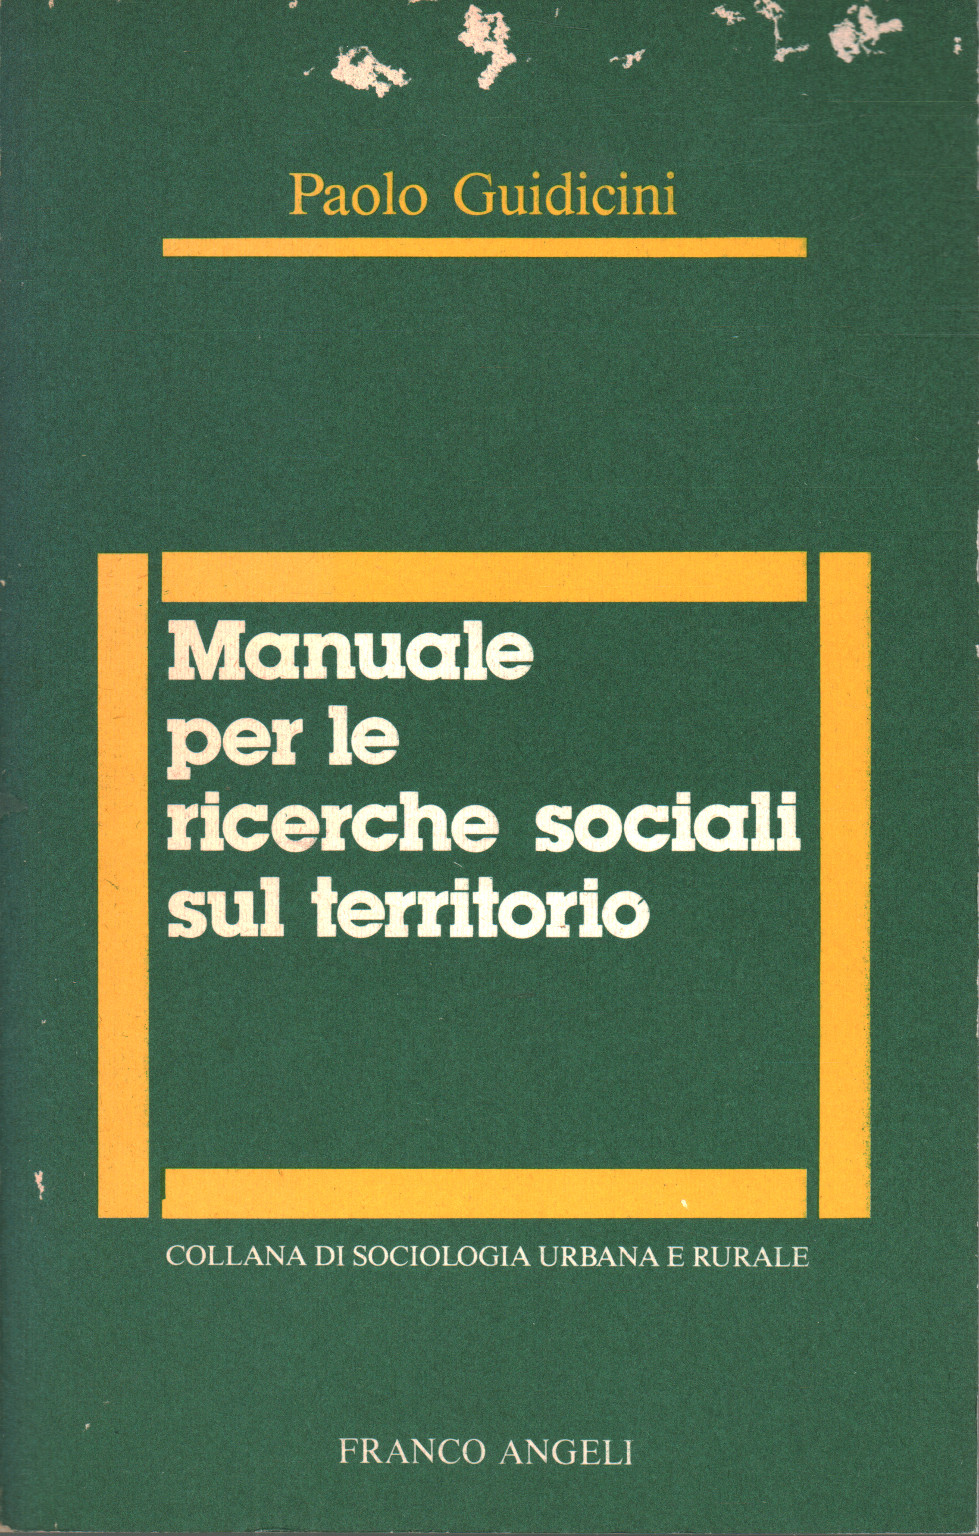 Manuale per le ricerche sociali sul territorio, Paolo Guidicini